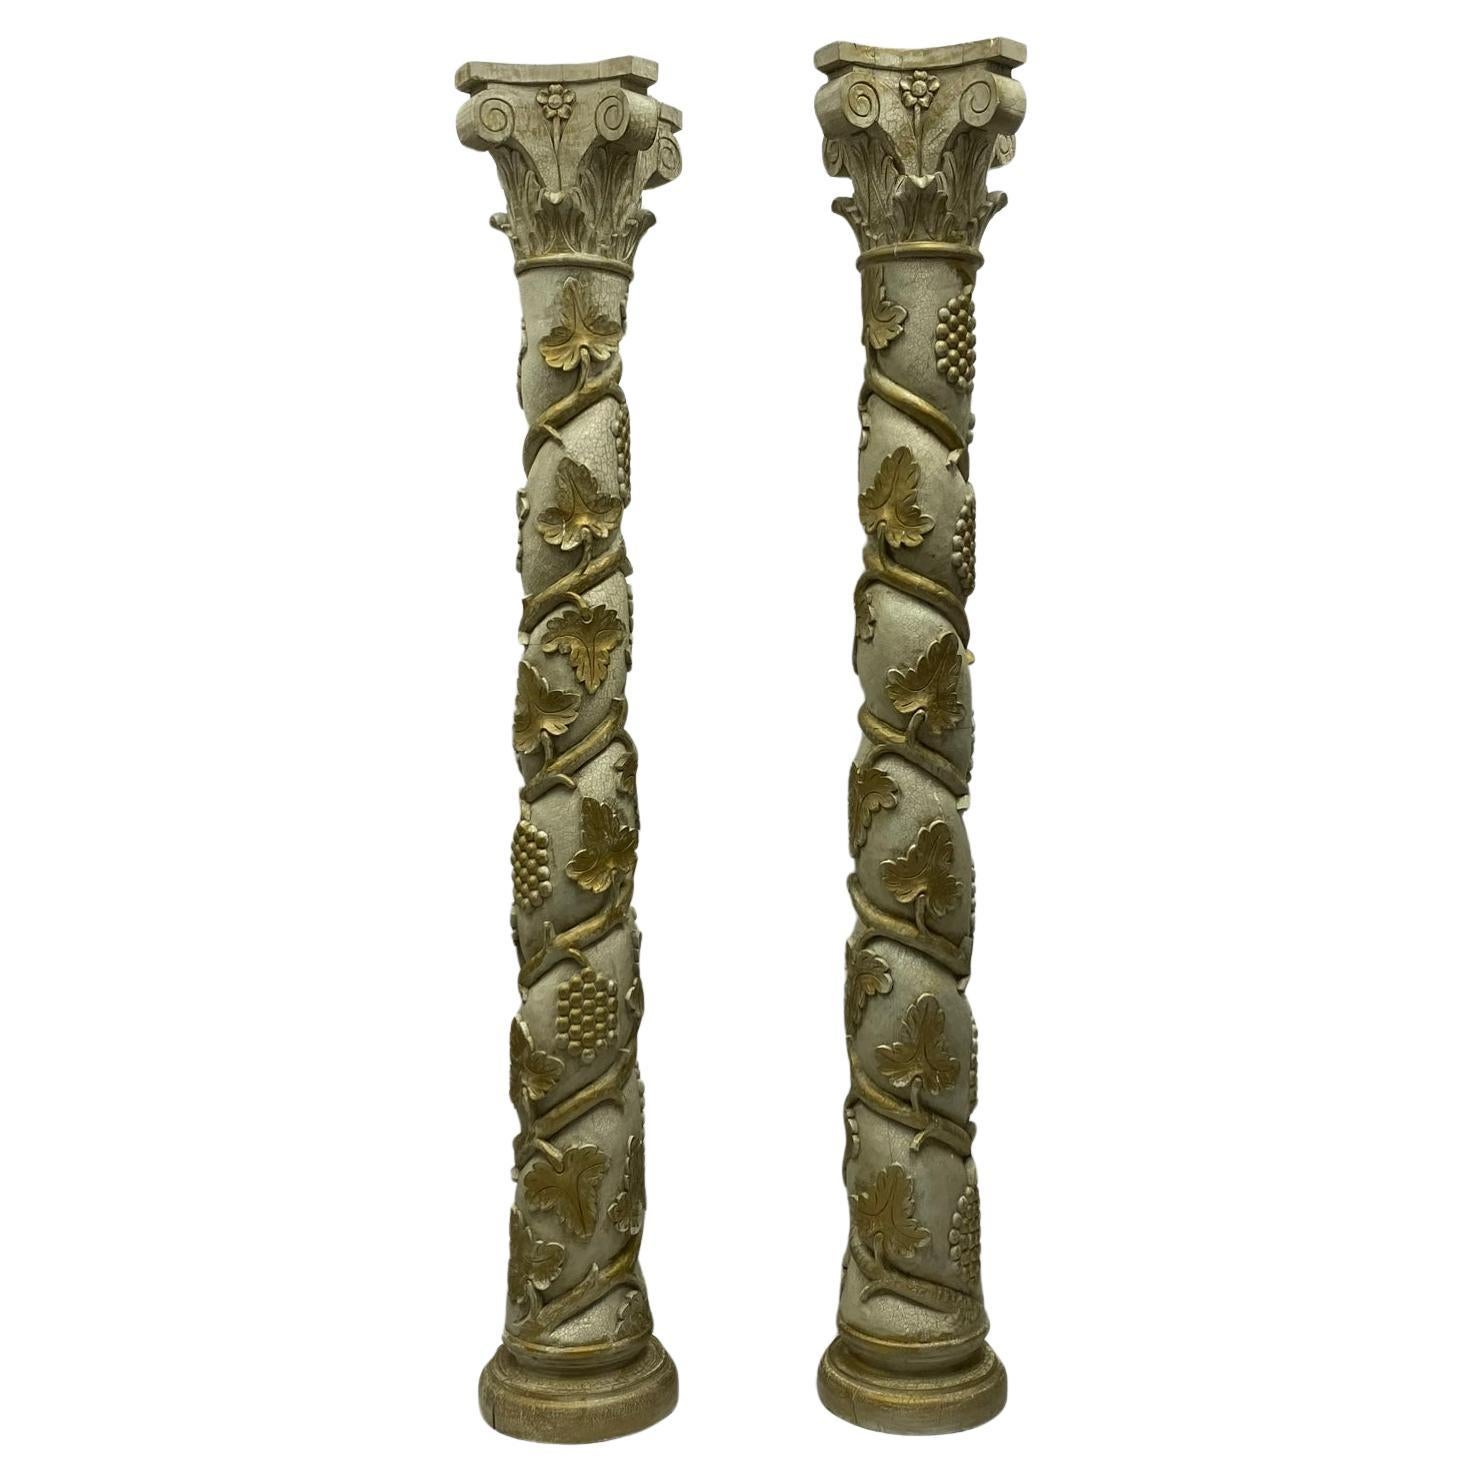 Il s'agit d'un monumental style néoclassique italien avec des colonnes sculptées et peintes avec des raisins et des vignes en cascade. Il s'agit vraisemblablement de pièces du milieu du siècle et elles présentent des traces d'usure dues à leur âge.